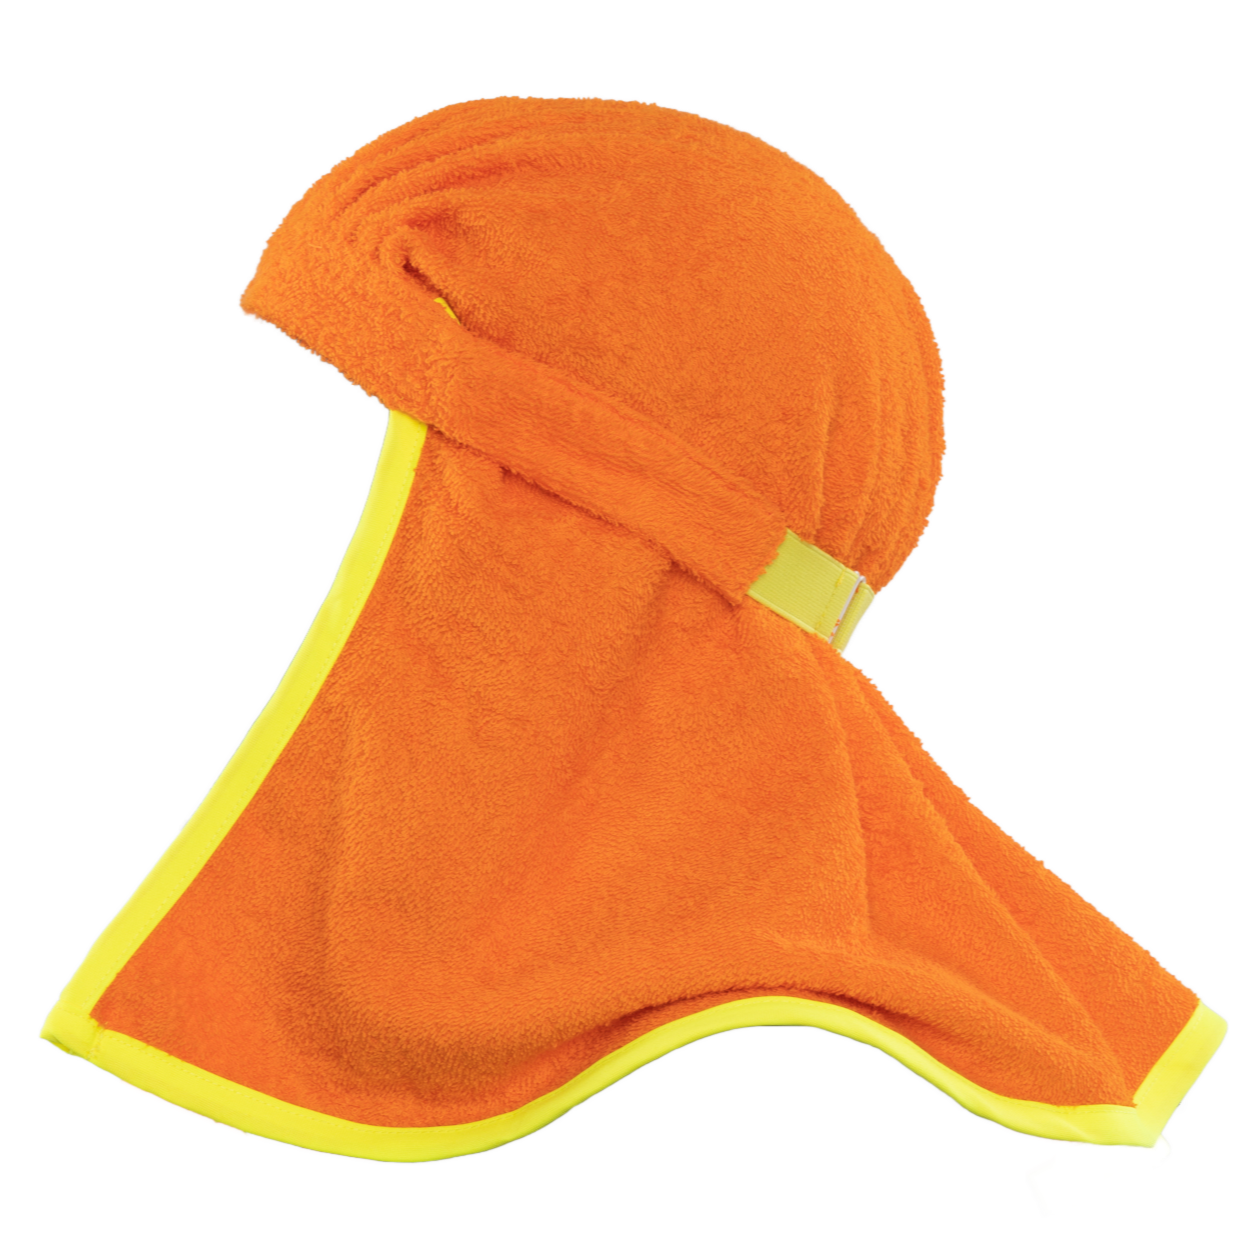 Polarheads PRO 3 en 1 protector para el cuello, banda para el sudor y toalla refrescante - Naranja de seguridad/Amarillo de seguridad